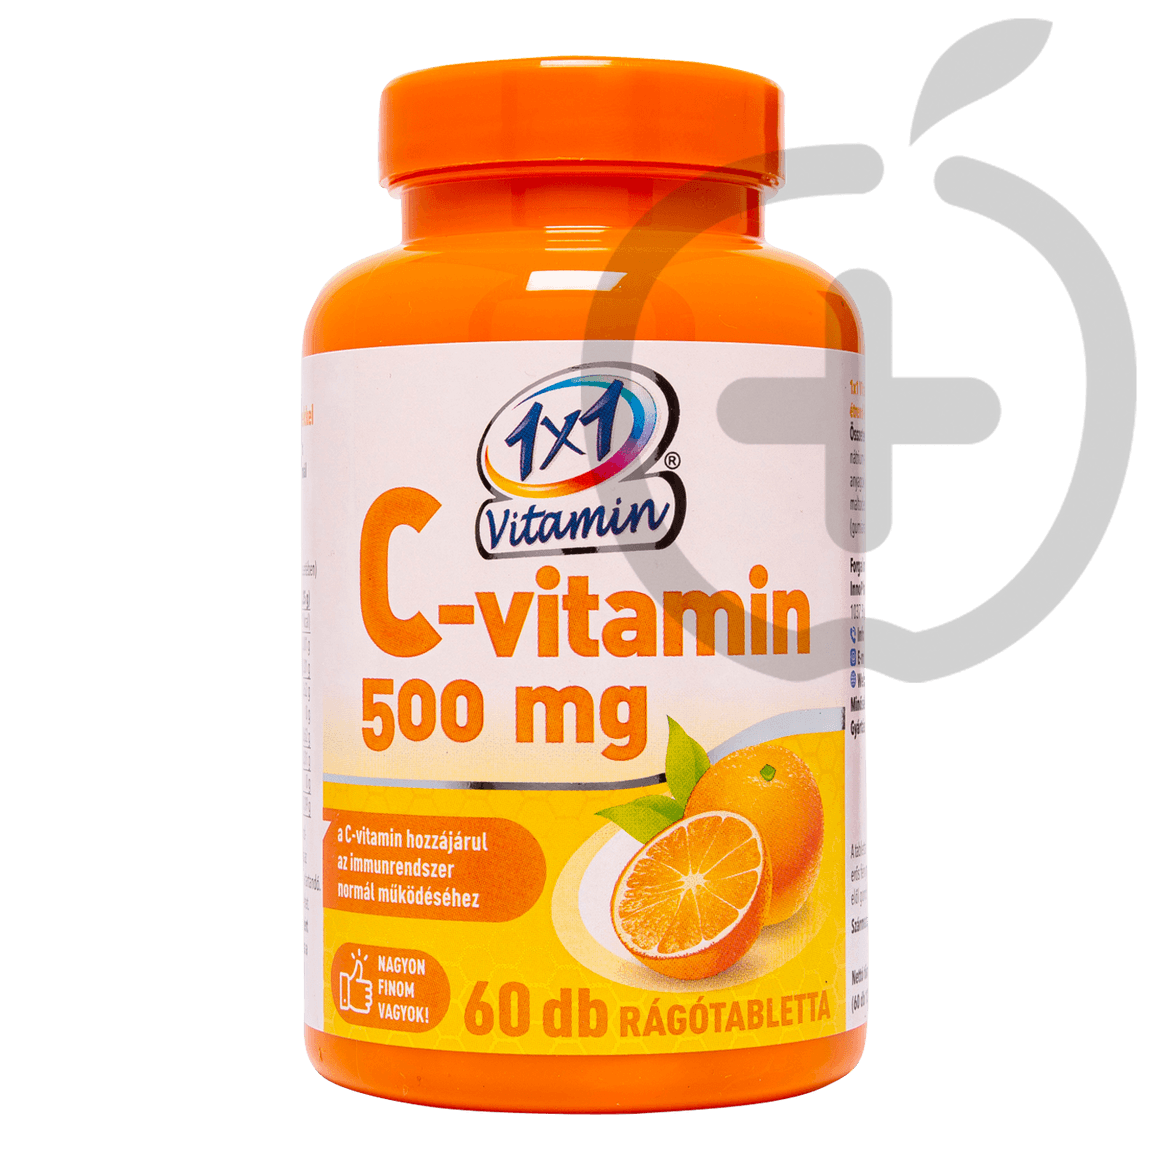 1x1 Vitaday C-vitamin 500 mg narancs ízű rágótabletta